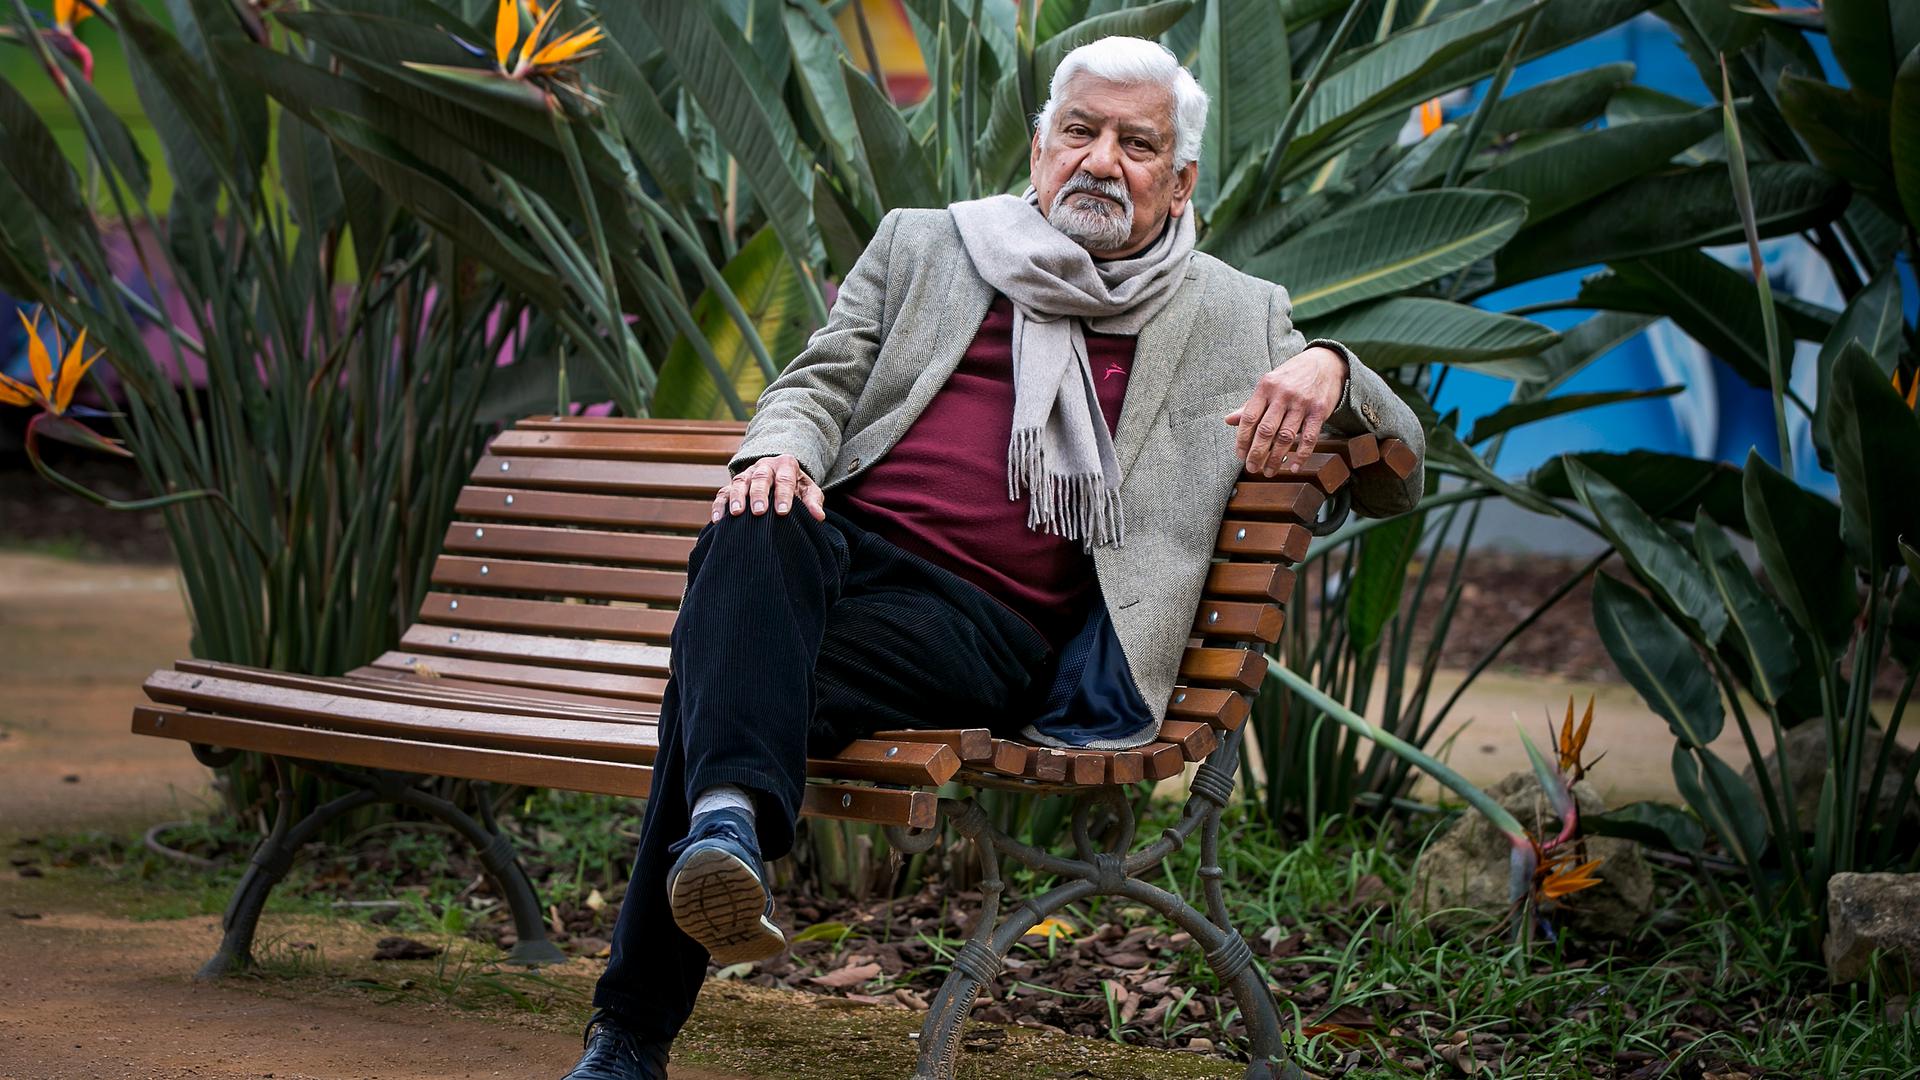 Teo Ferrer de Mesquita vive atualmente em Lisboa, cidade onde foi fotografado para o Contacto.